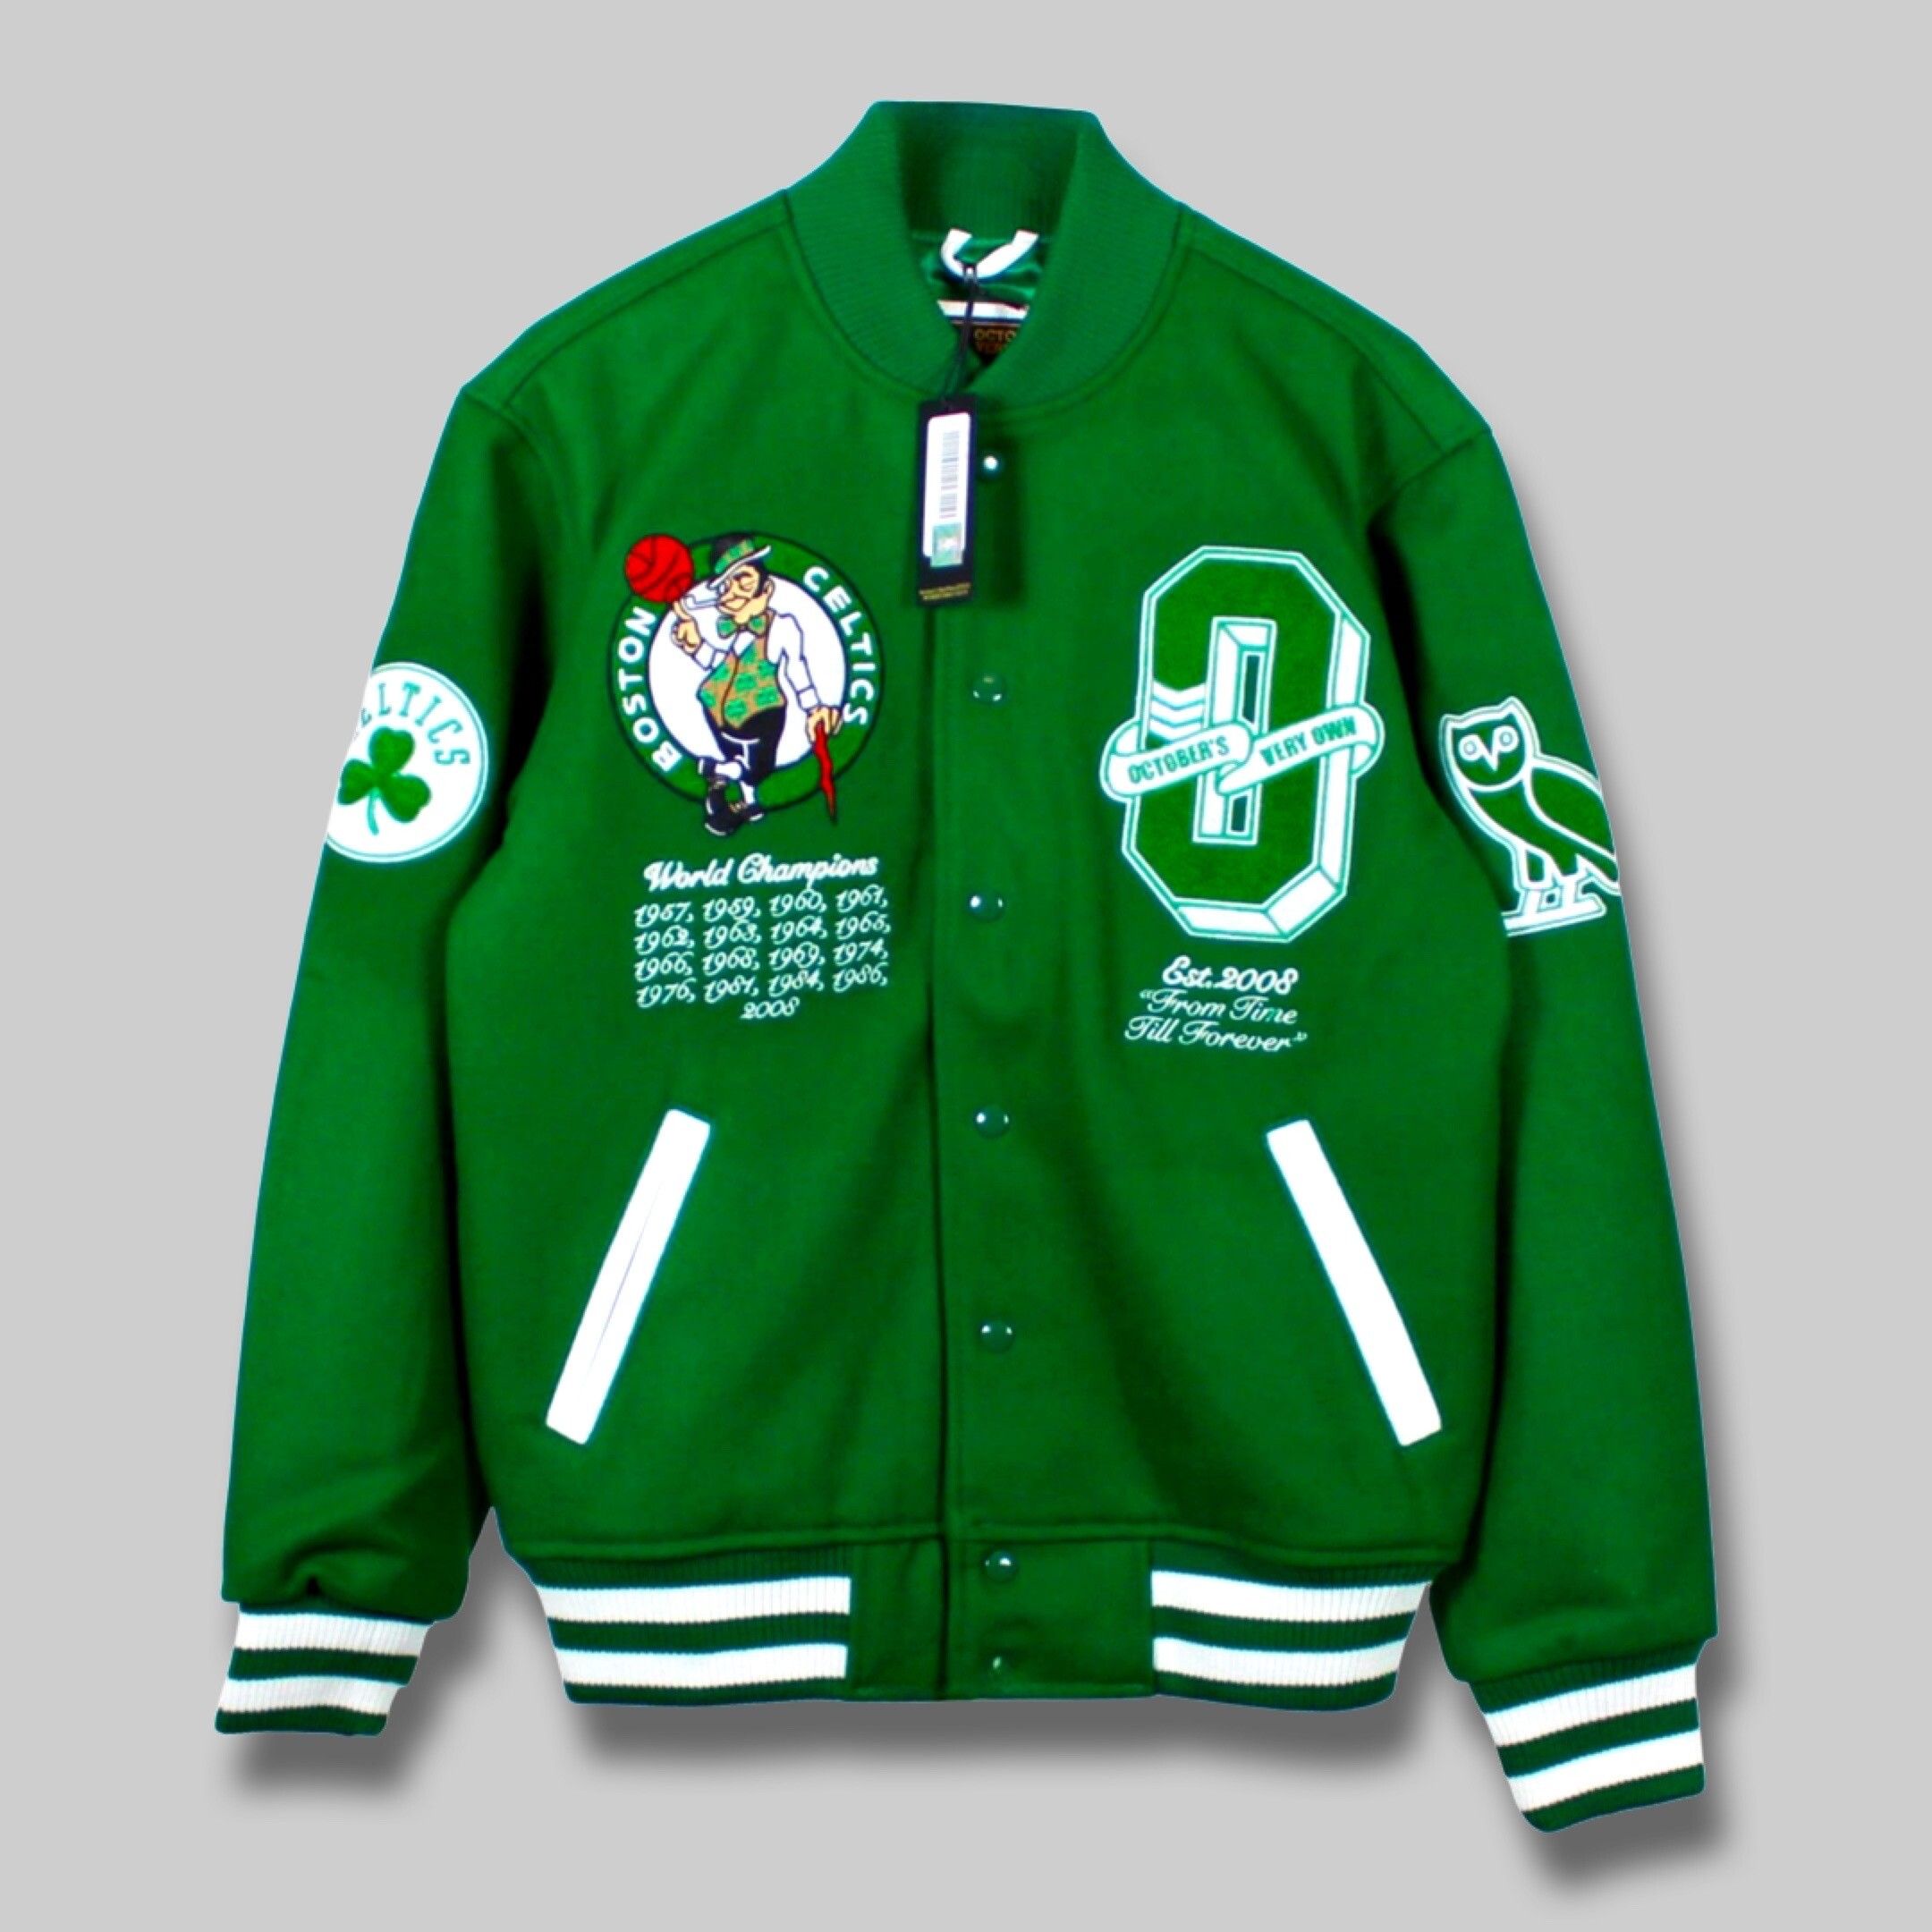 OVO x NBA Celtics Varsity Jacket - Green